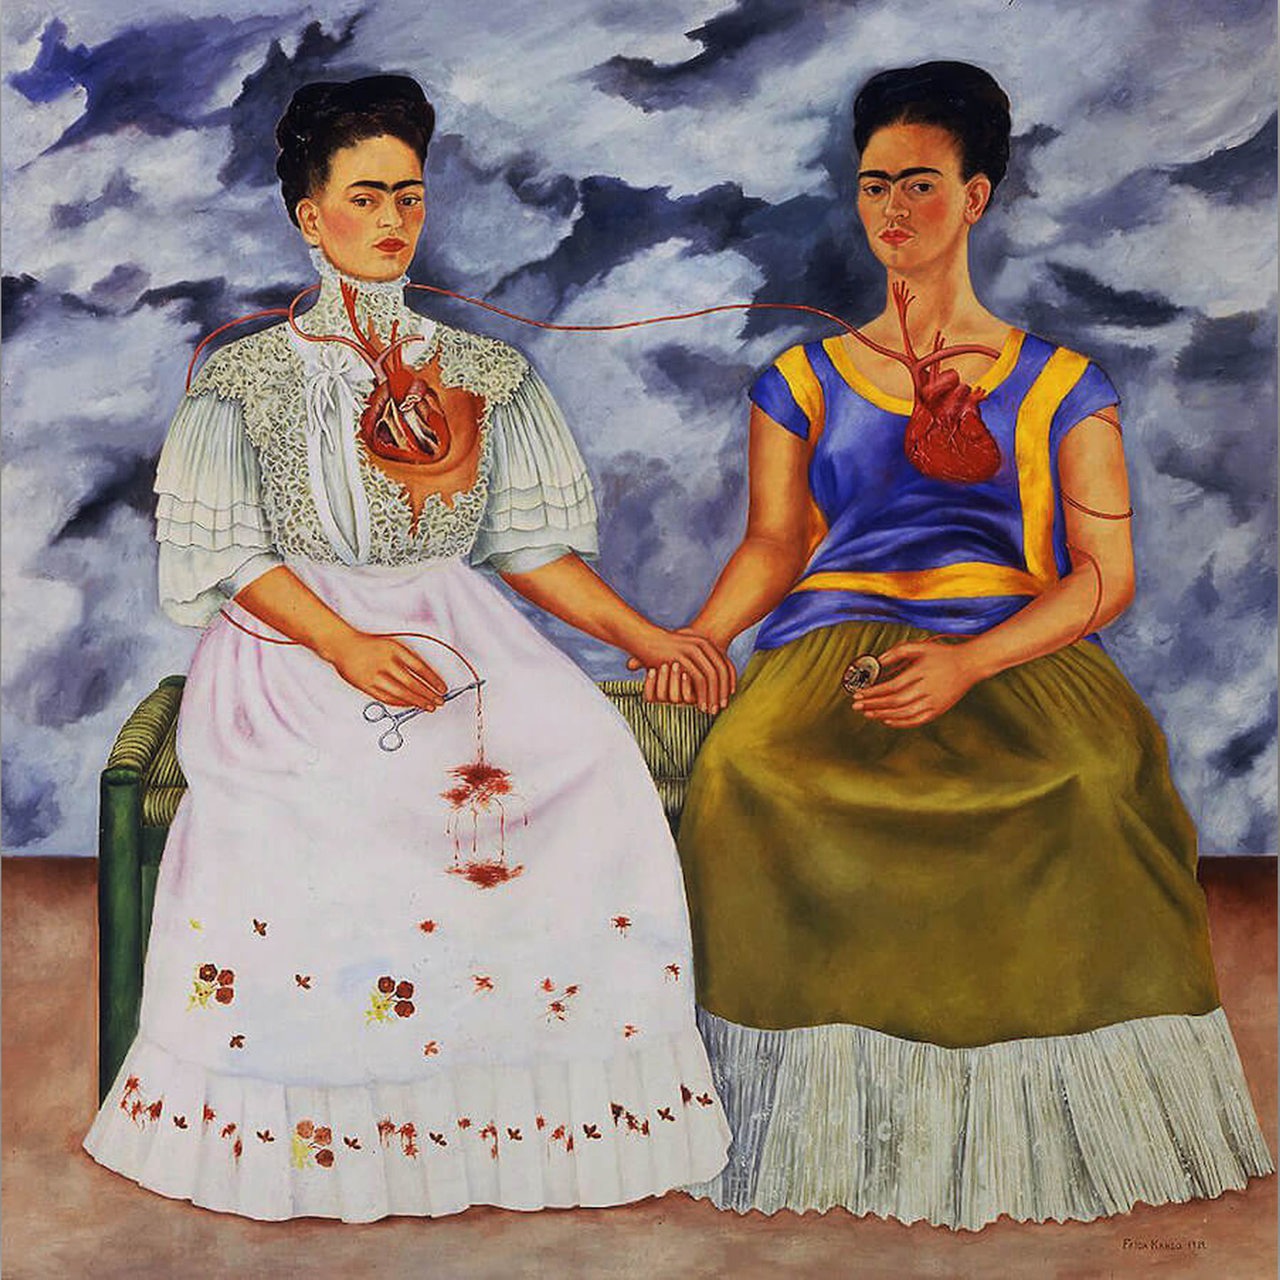 Gemälde von Frida Kahlo: "The Two Fridas" von 1939.